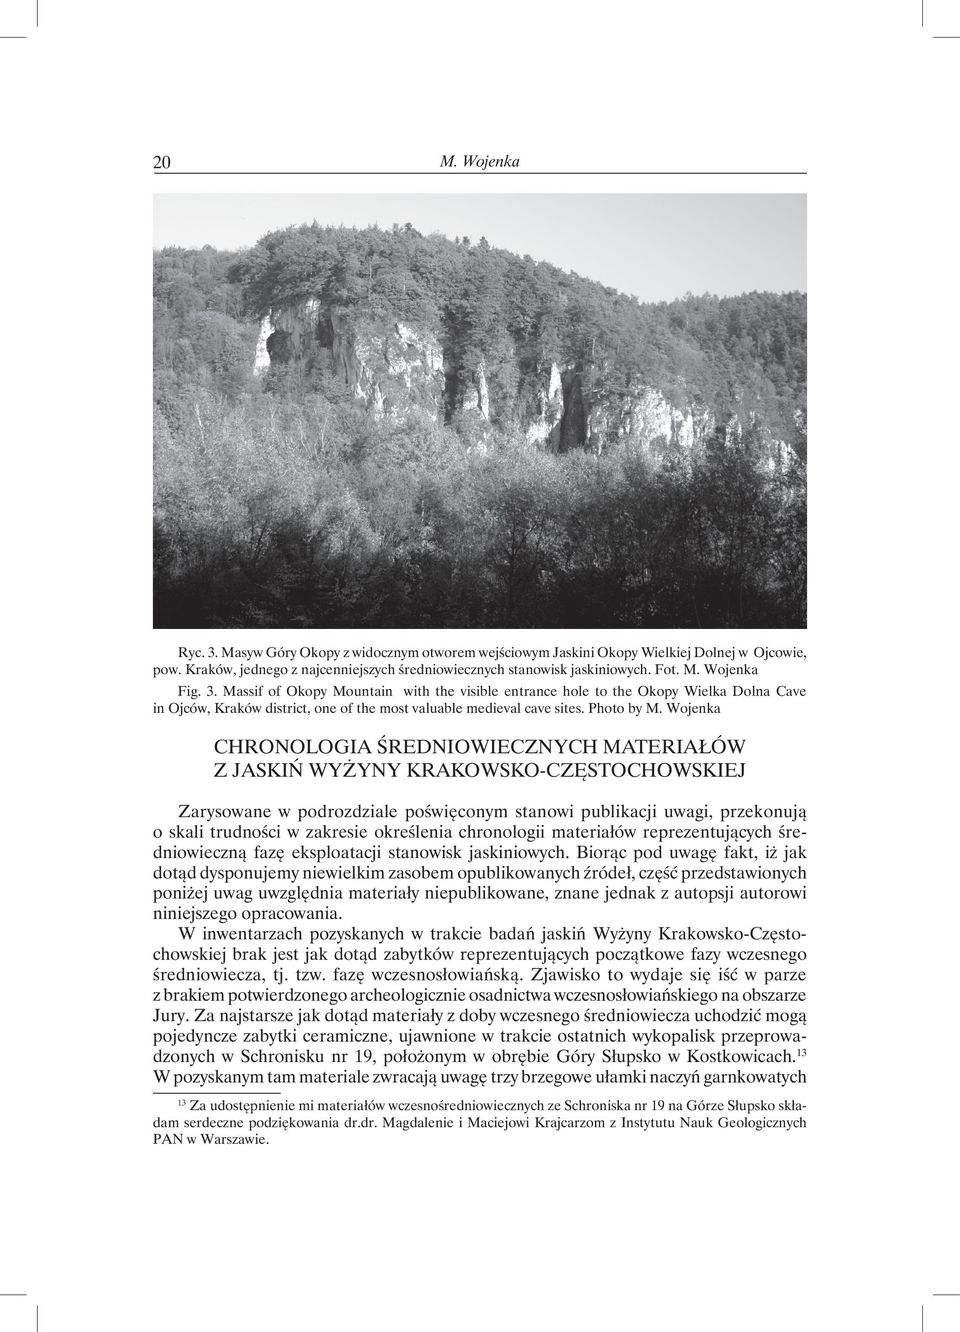 Wojenka Chronologia średniowiecznych materiałów z jaskiń Wyżyny Krakowsko-Częstochowskiej Zarysowane w podrozdziale poświęconym stanowi publikacji uwagi, przekonują o skali trudności w zakresie